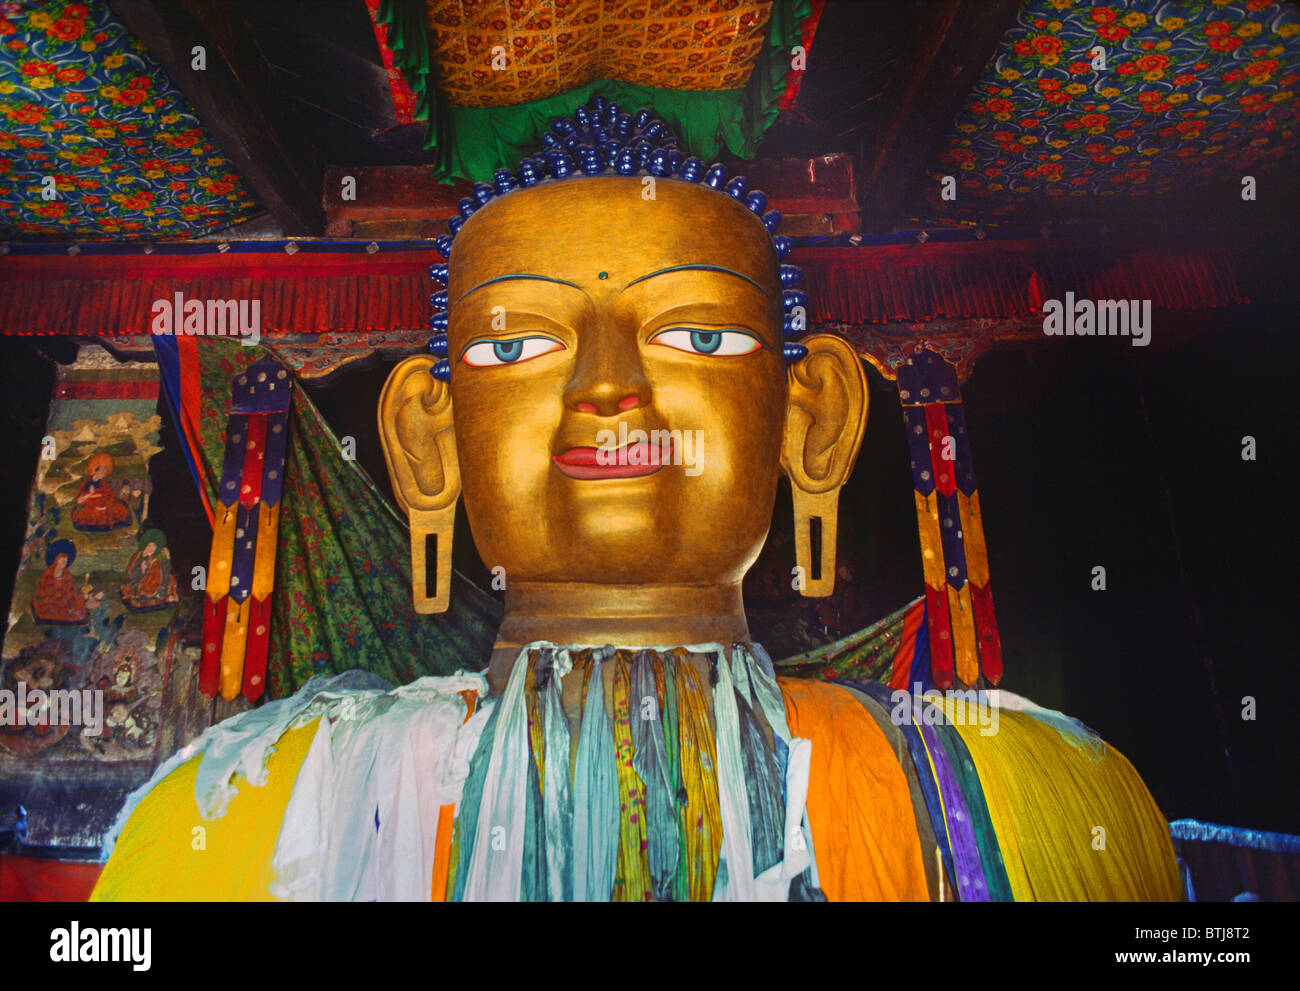 Die größte SHAKYAMUNI BUDDHA-Statue in LADAKH ist 39 Fuß hoch und befindet sich in SHEY GOMPA (Kloster) - LADAKH, Indien Stockfoto